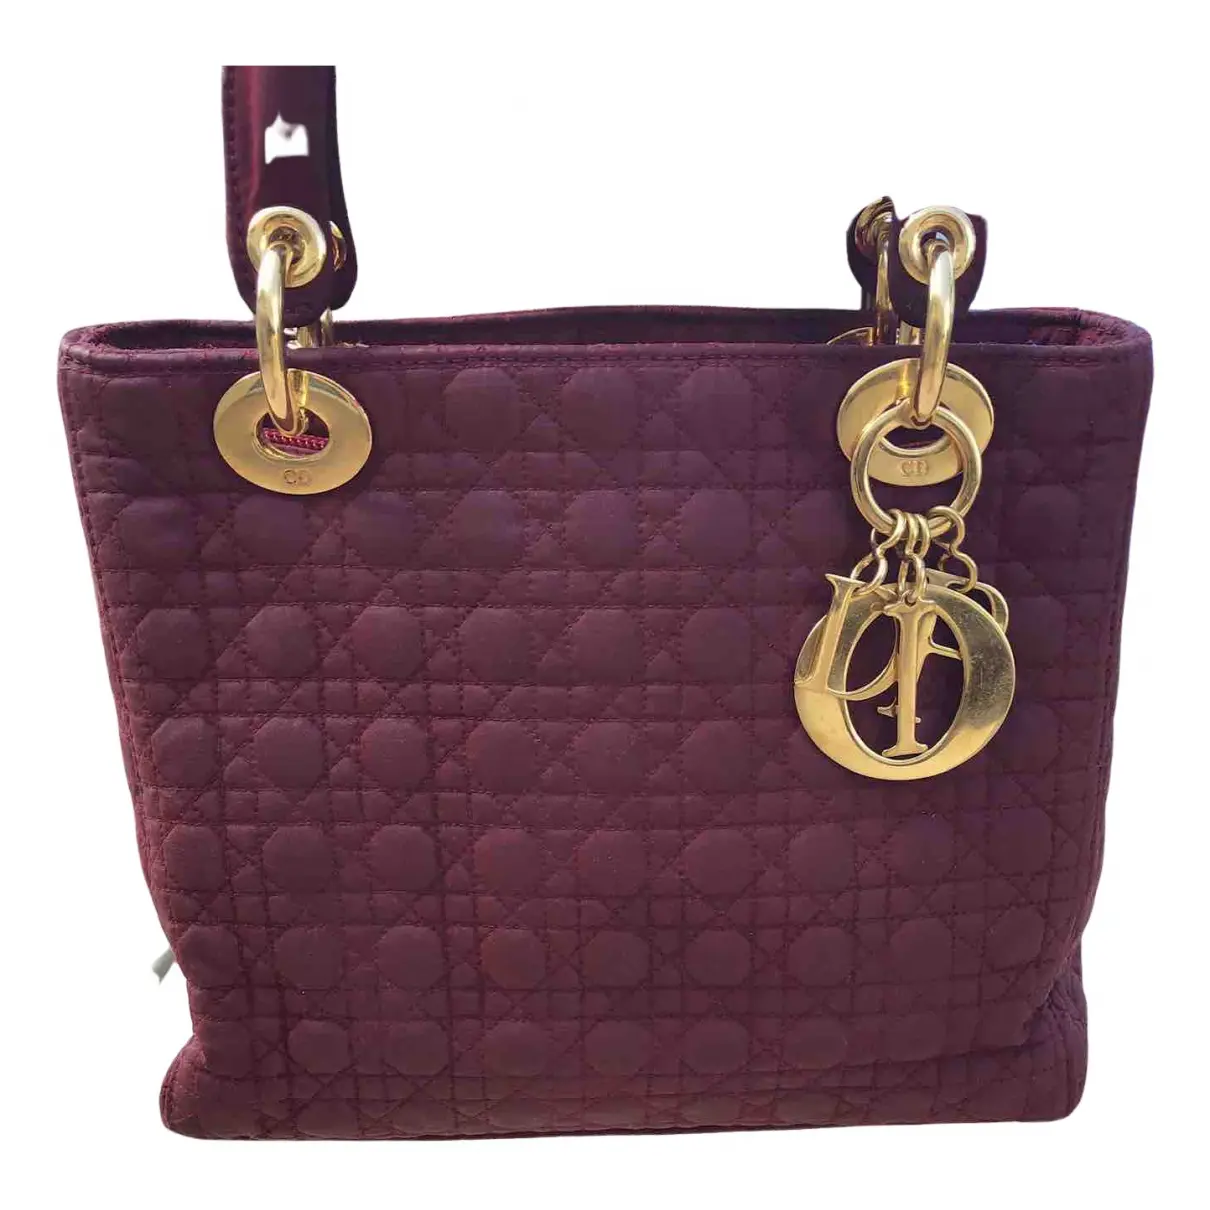 Buy Dior Lady Dior cloth handbag online - Vintage